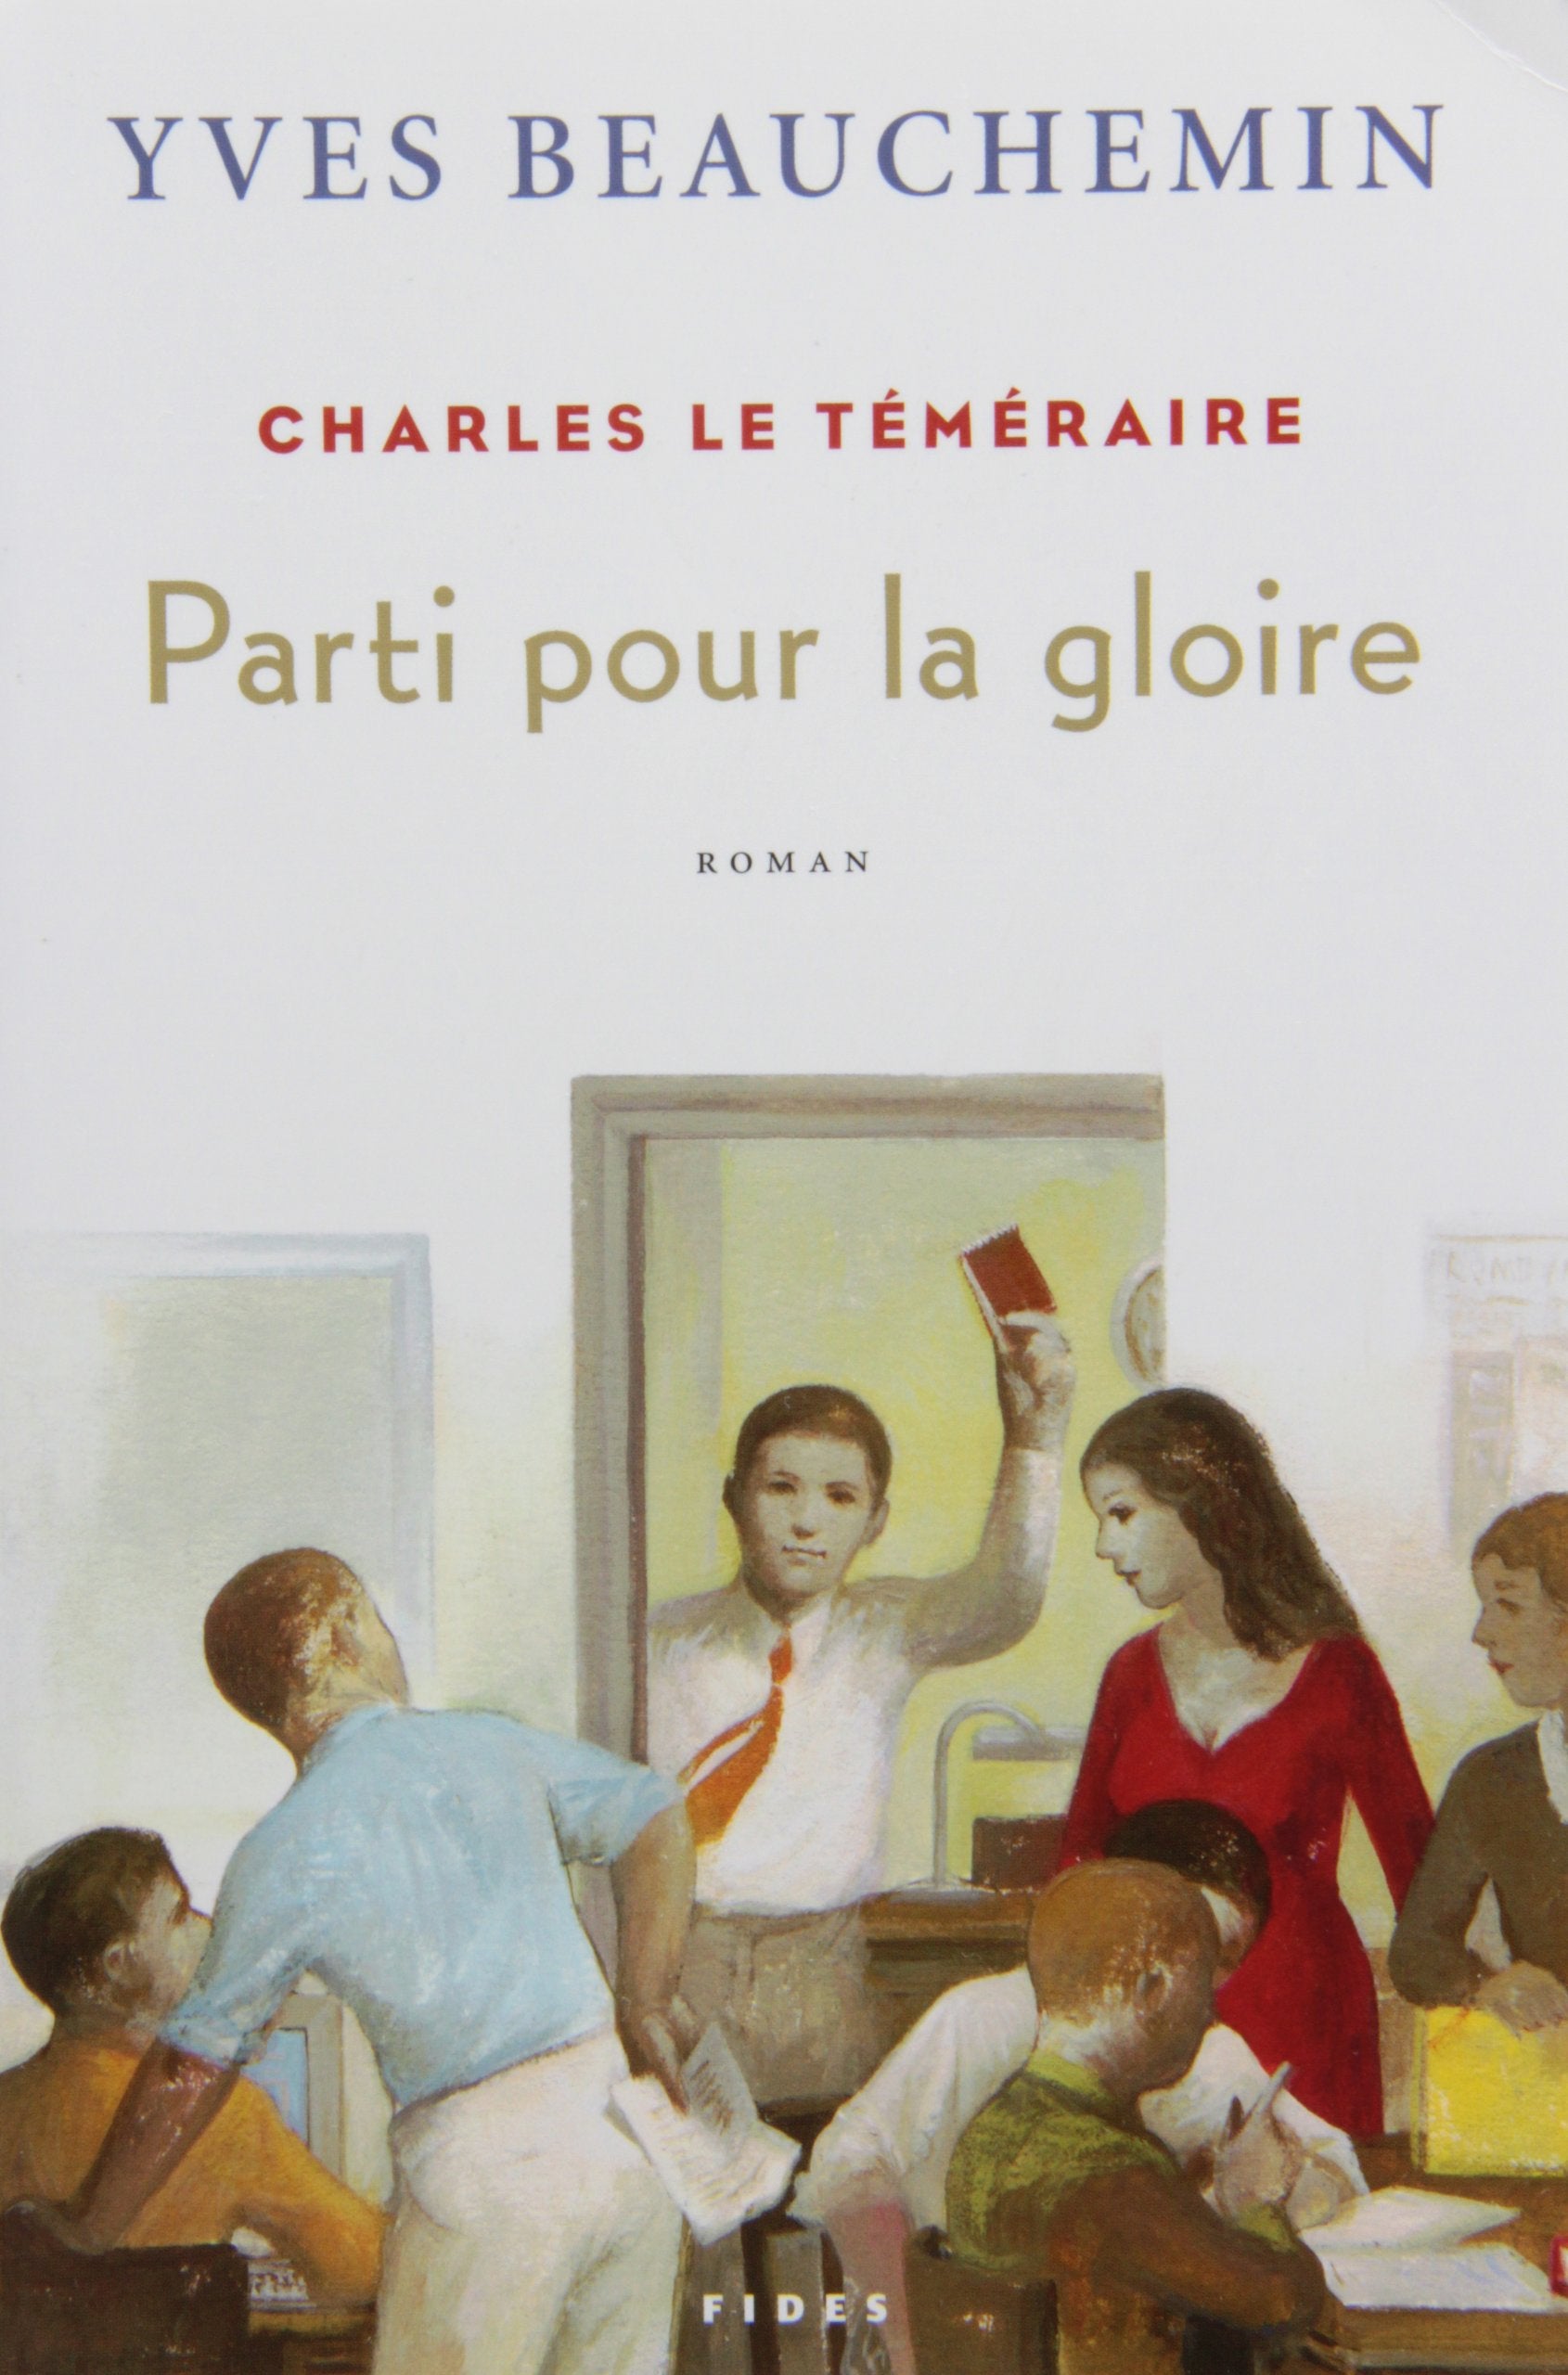 Livre ISBN 2762126533 Charles le téméraire # 3 : Parti pour la gloire (Yves Beauchemin)